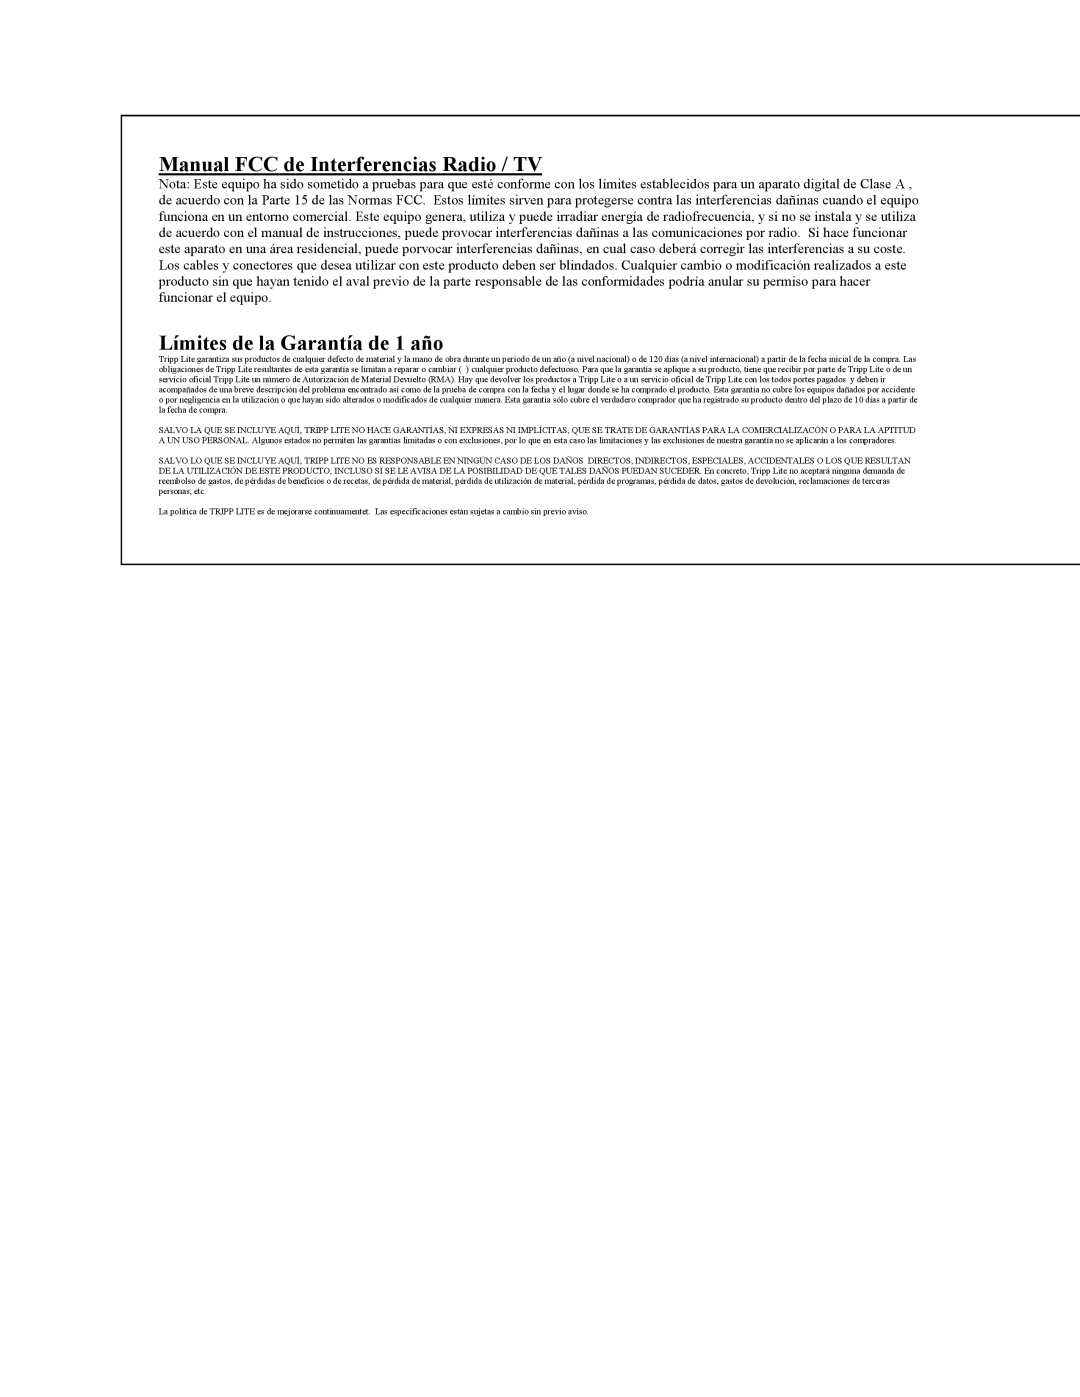 Tripp Lite B005-008 user manual Manual FCC de Interferencias Radio / TV, Límites de la Garantía de 1 año 